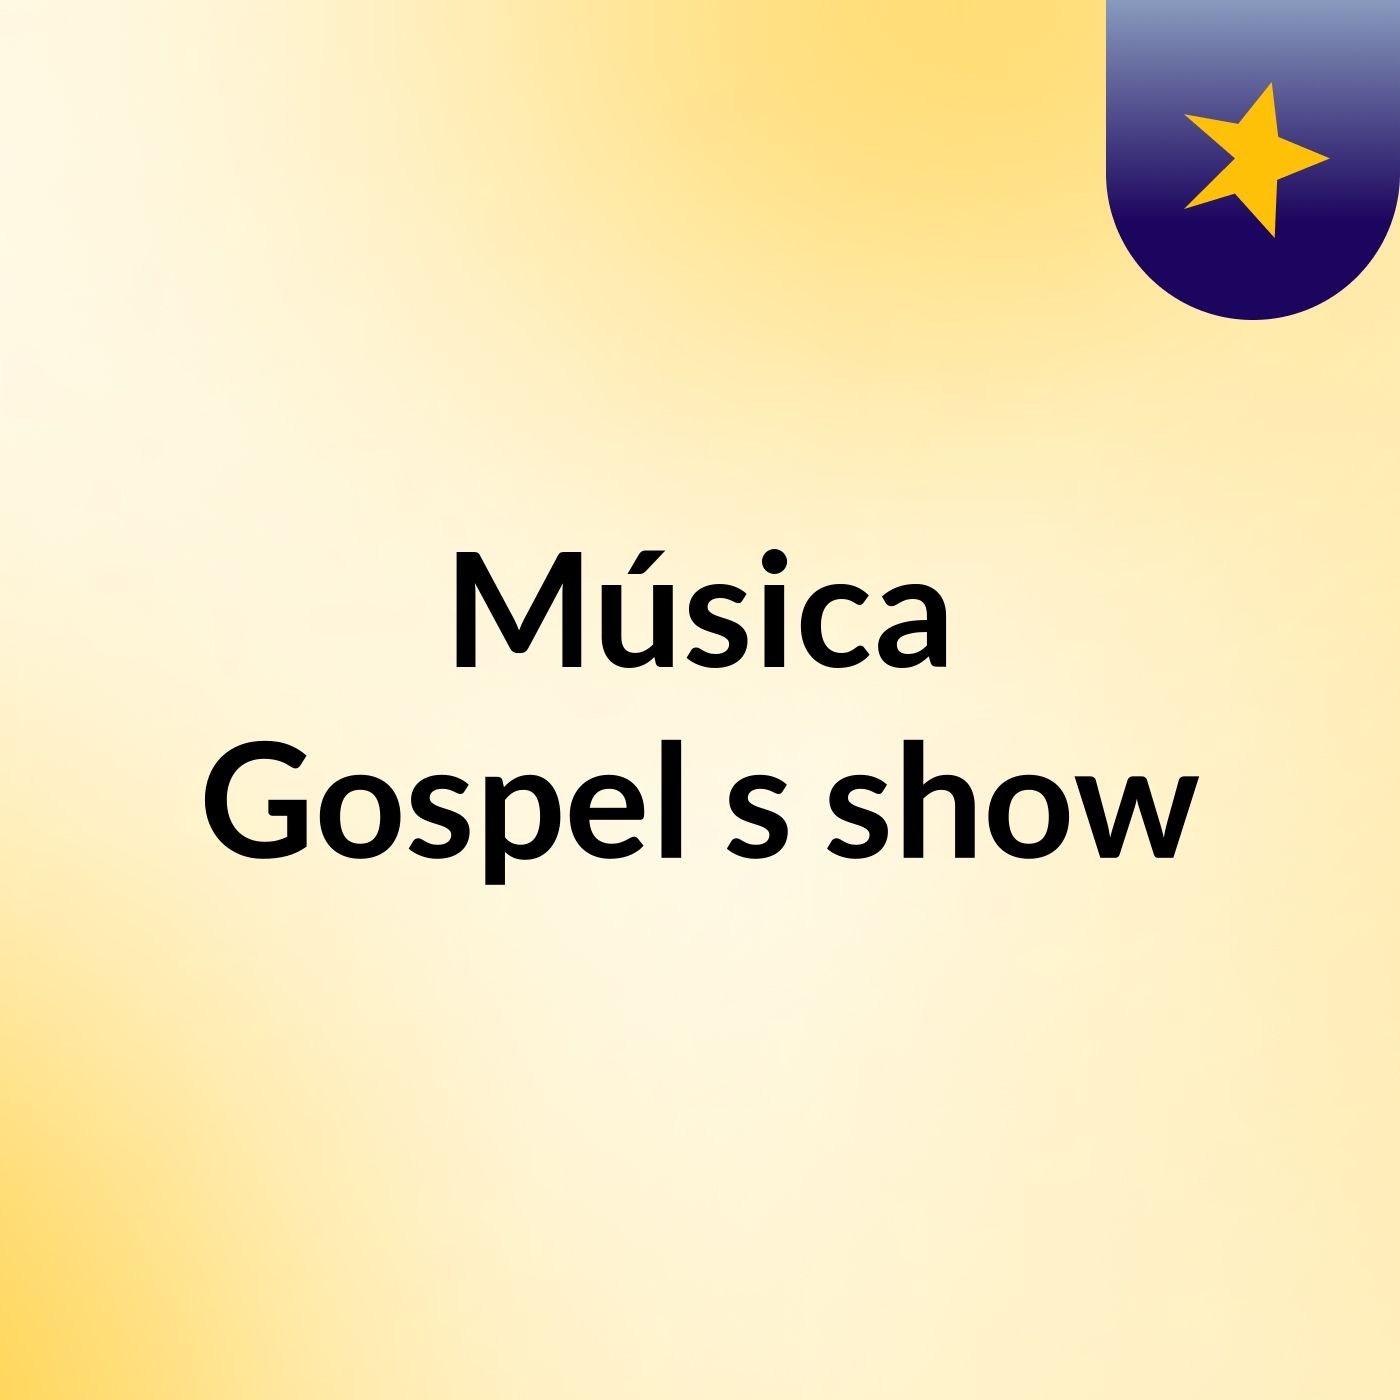 Música Gospel's show